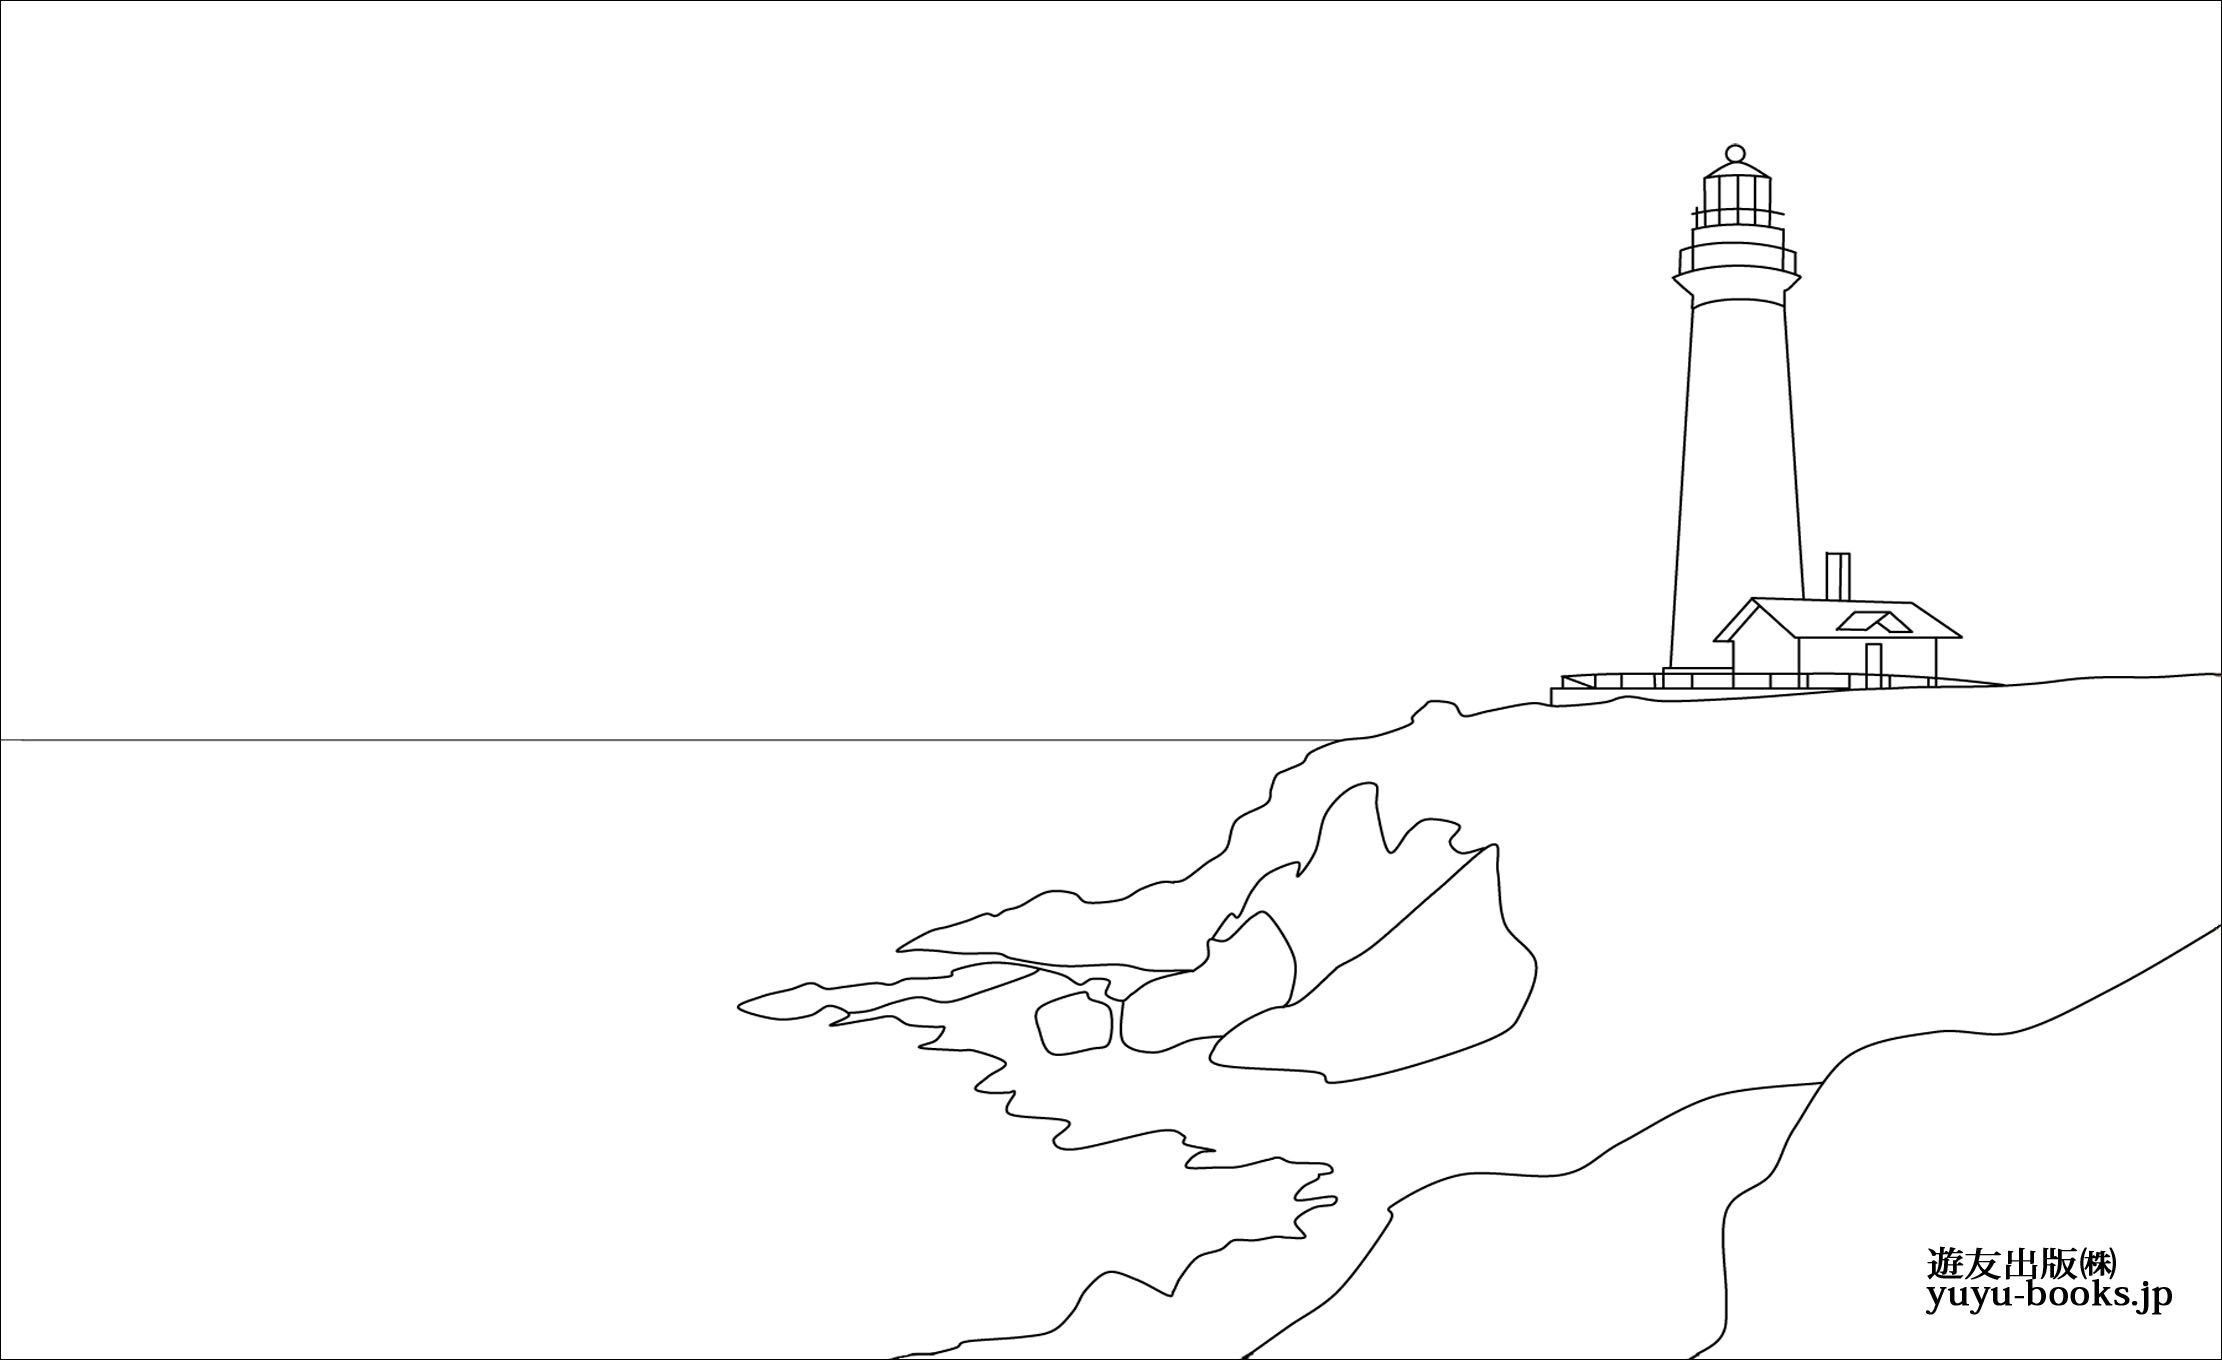 レク素材 灯台 遊友出版 介護レク広場 レク素材やレクネタ 企画書 の無料ダウンロード